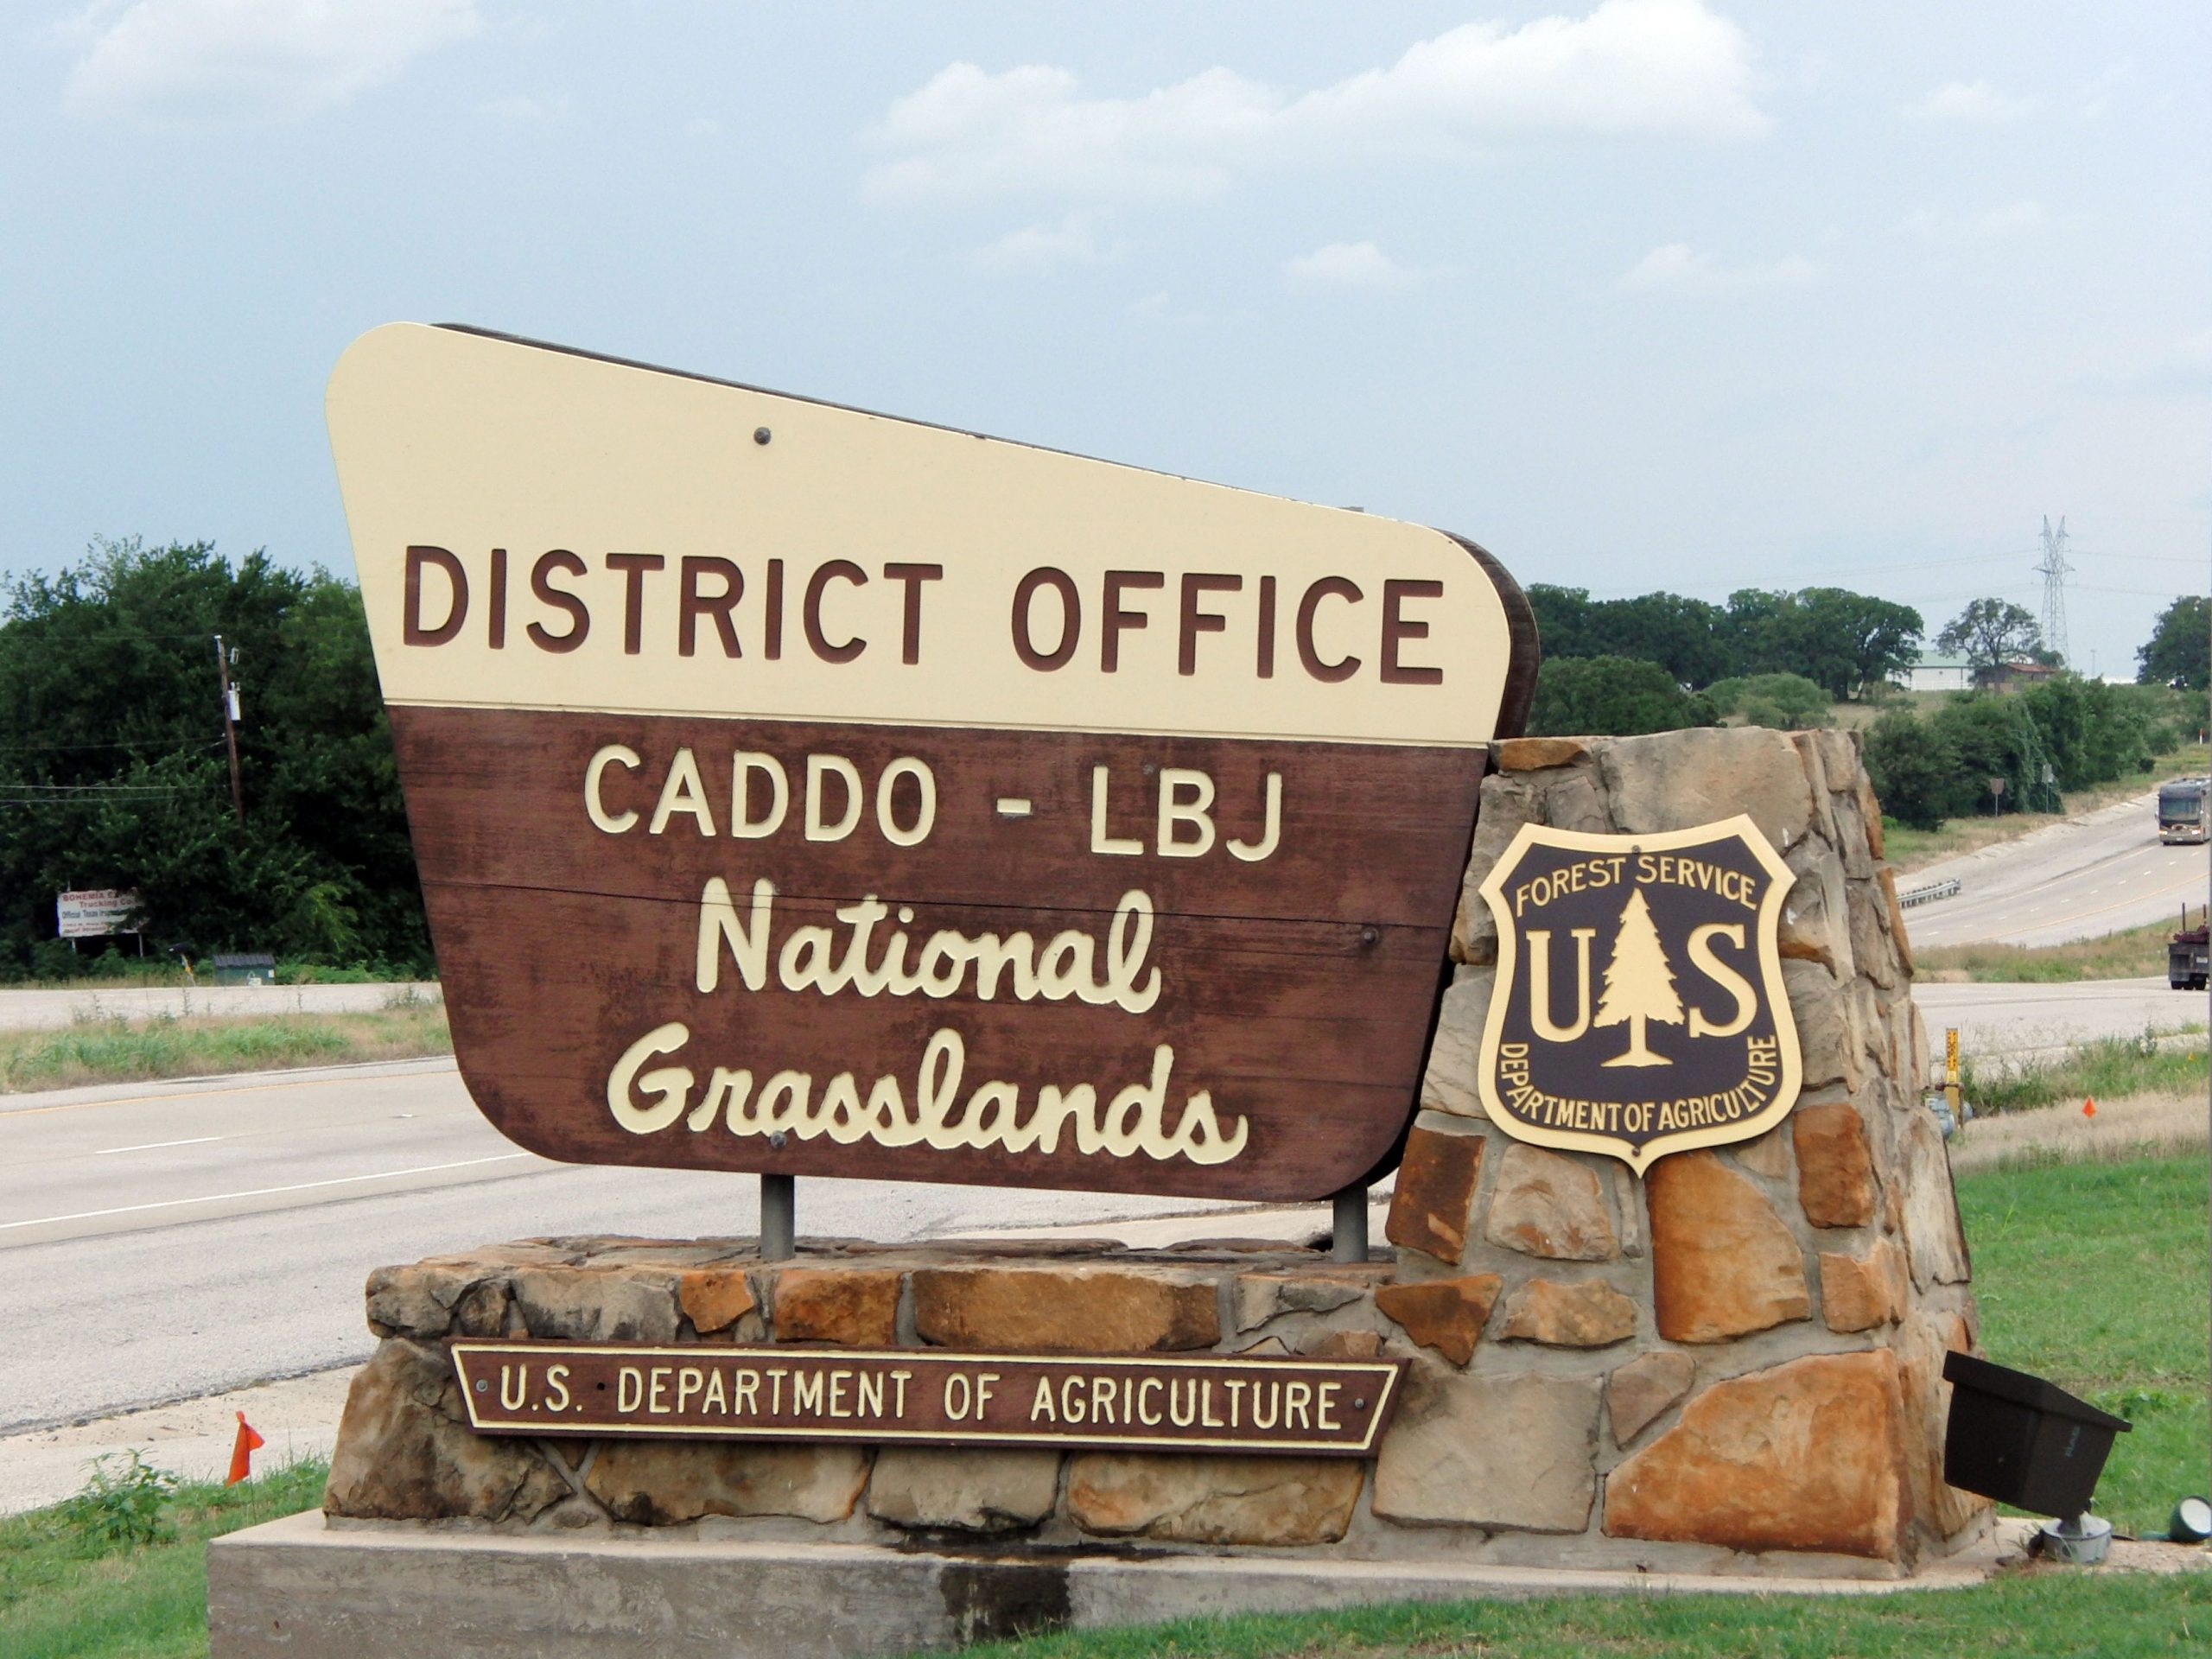 Caddo-LBJ National Grasslands